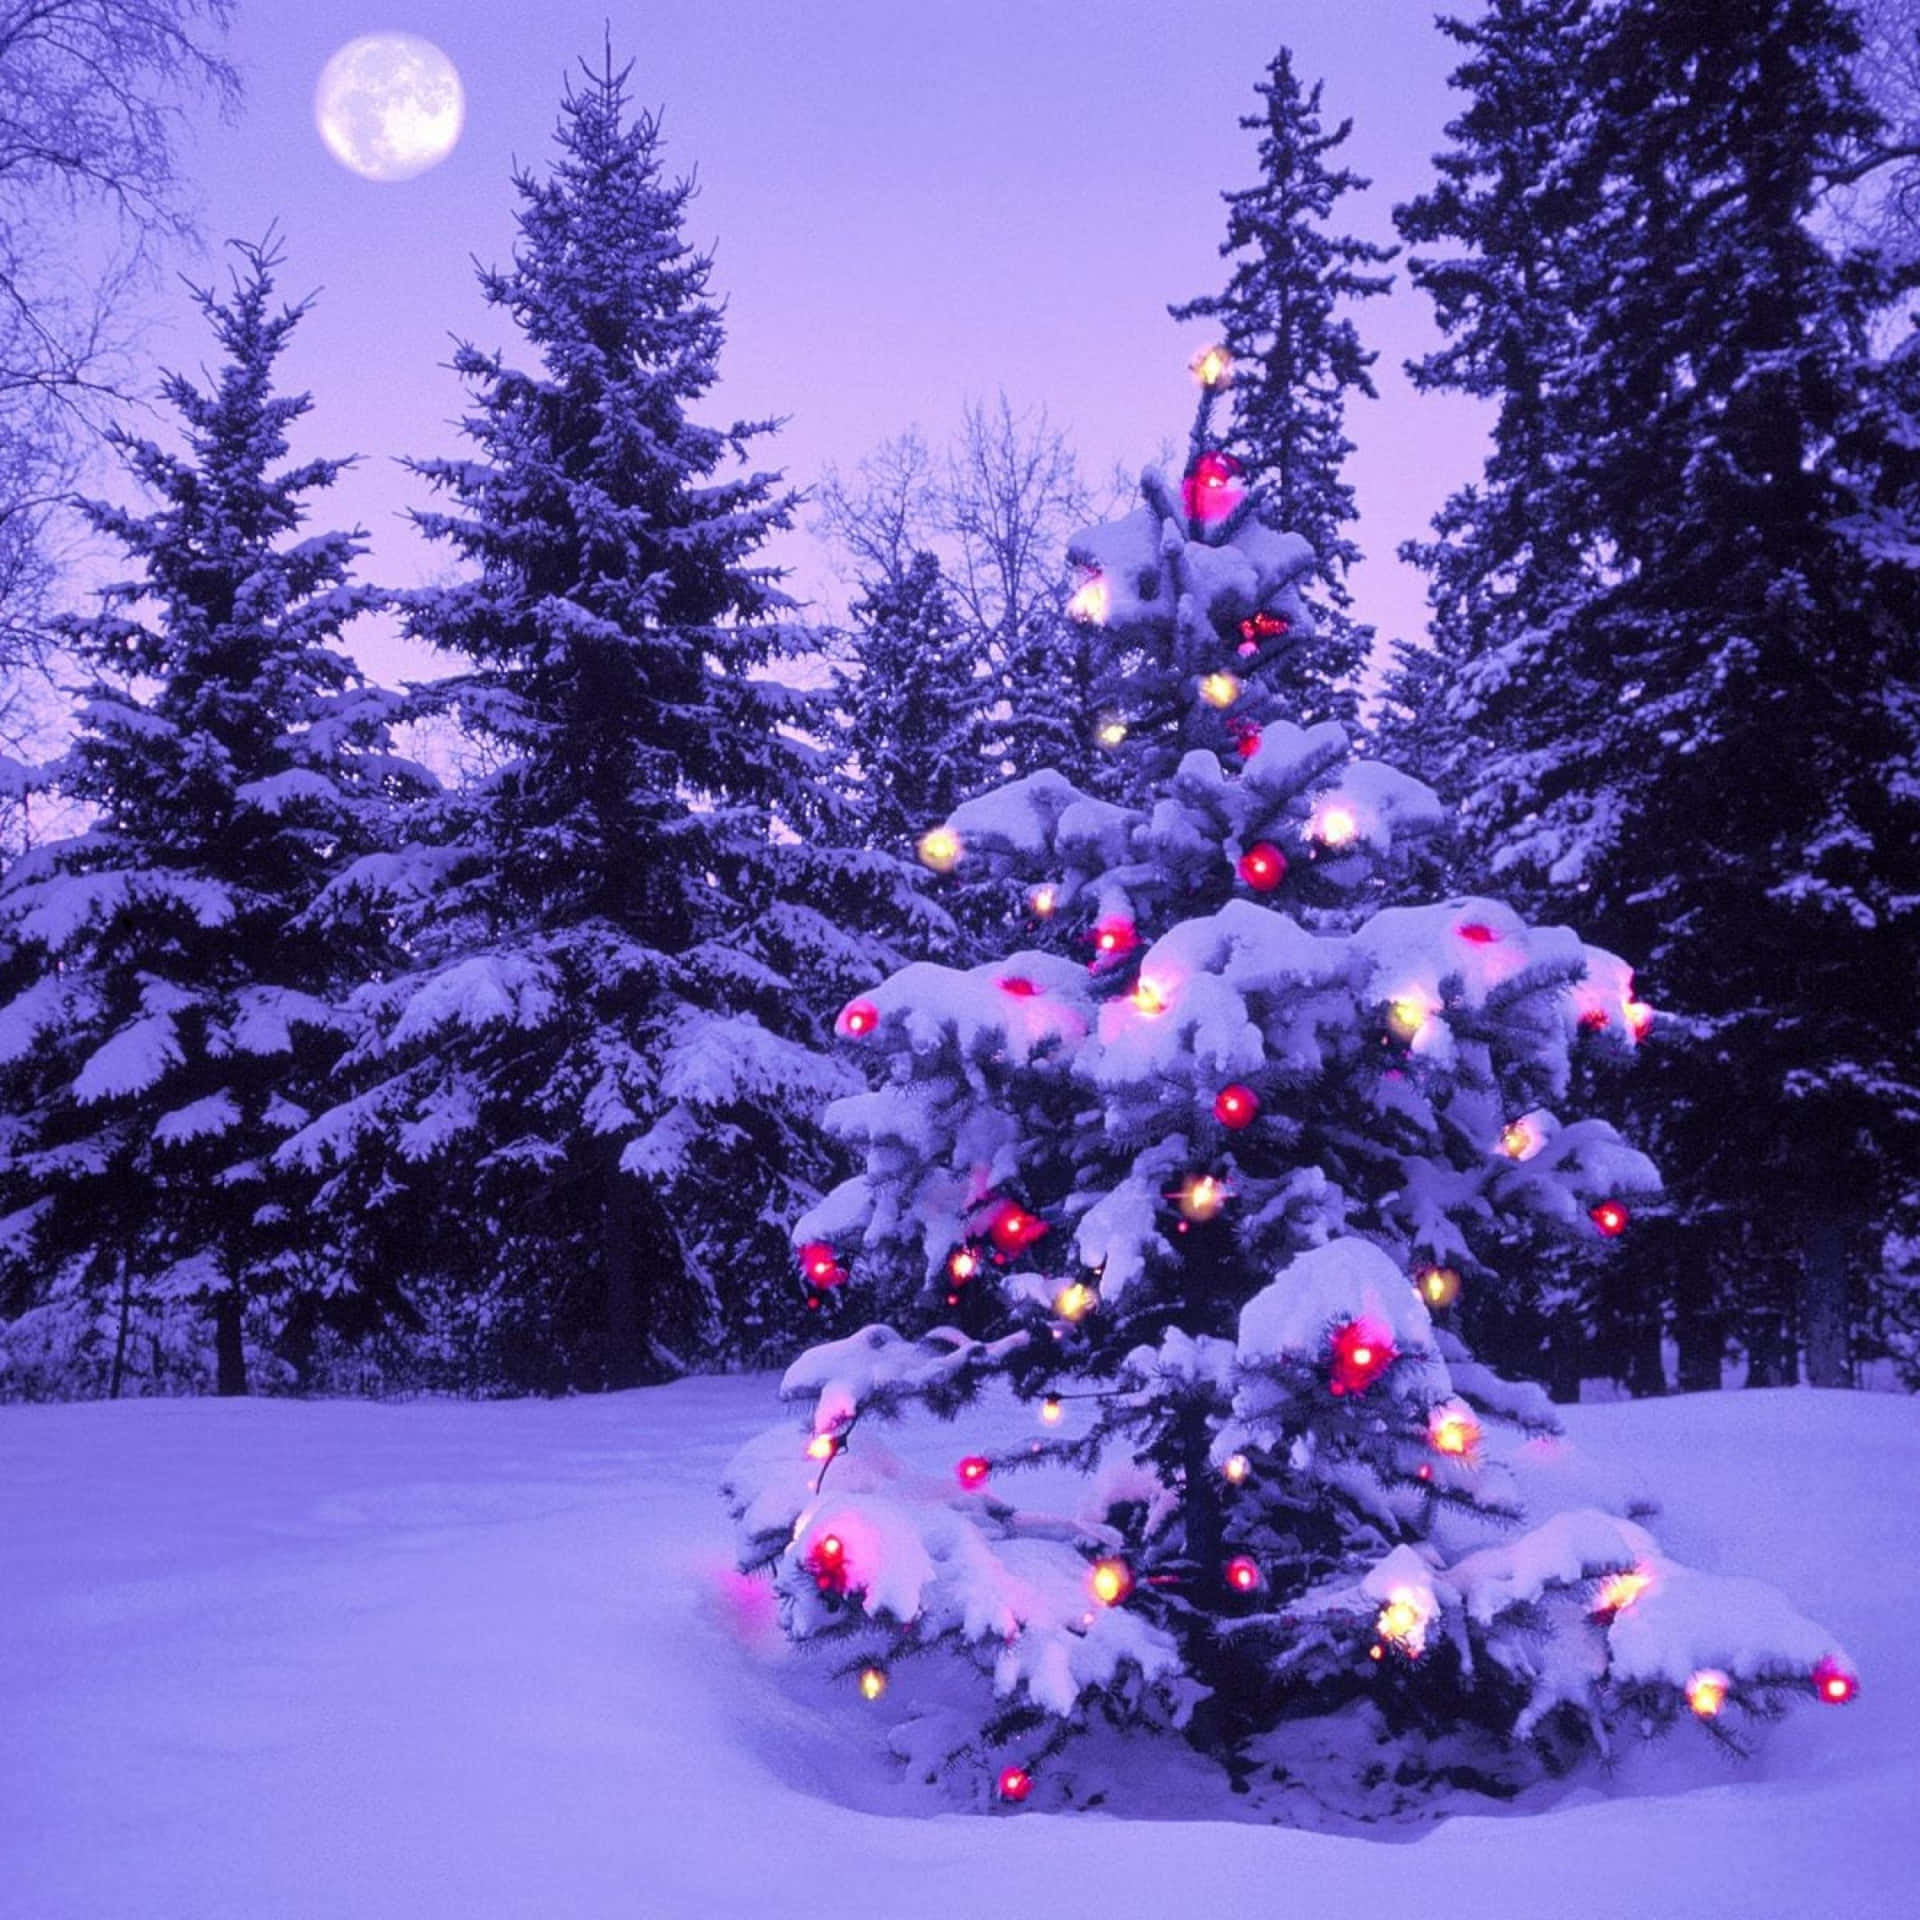 Umaárvore De Natal Na Neve Com Uma Lua Cheia. Papel de Parede